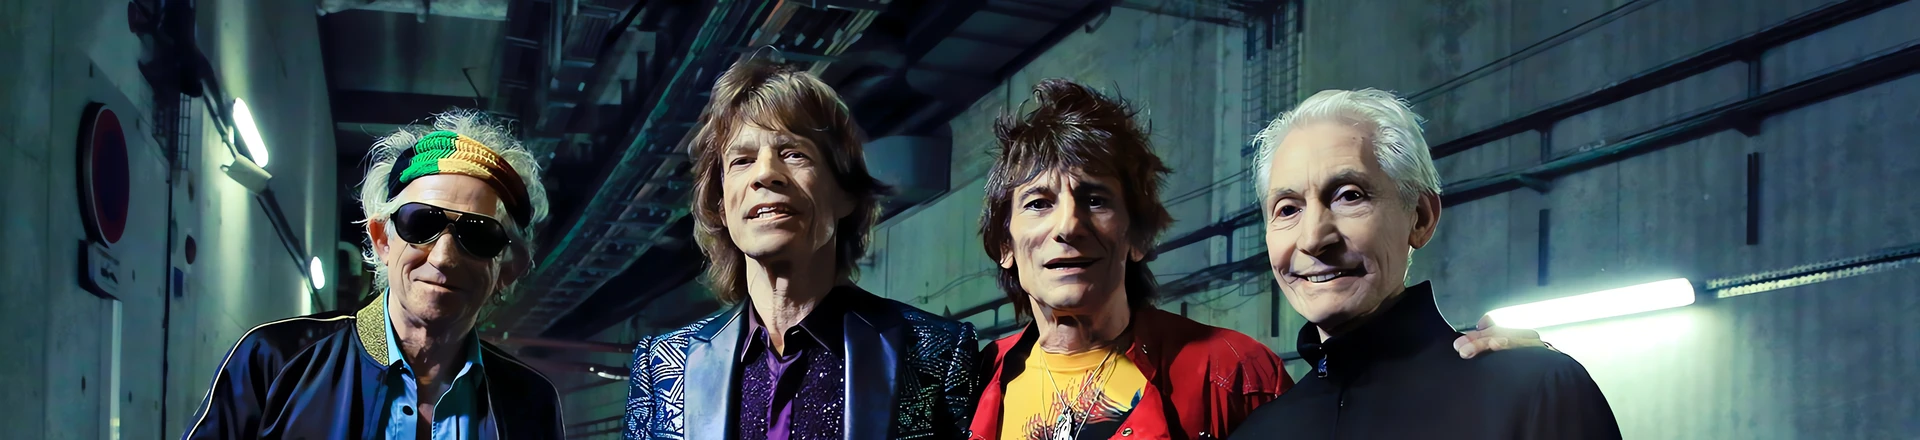 KONKURS: Zgarnij bilety na The Rolling Stones z Adam Hall!